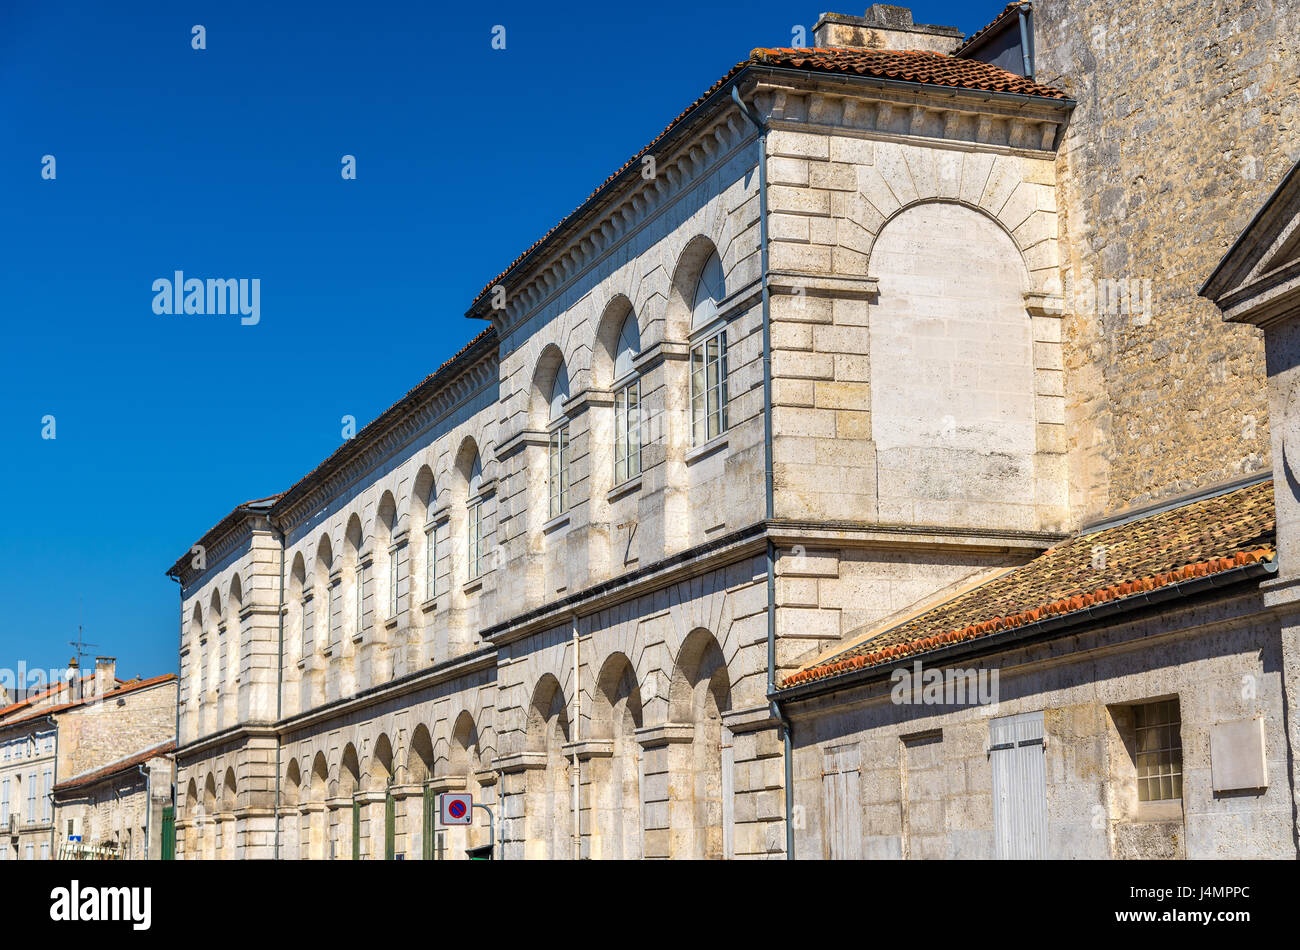 Les bâtiments historiques à Angoulême, France Banque D'Images